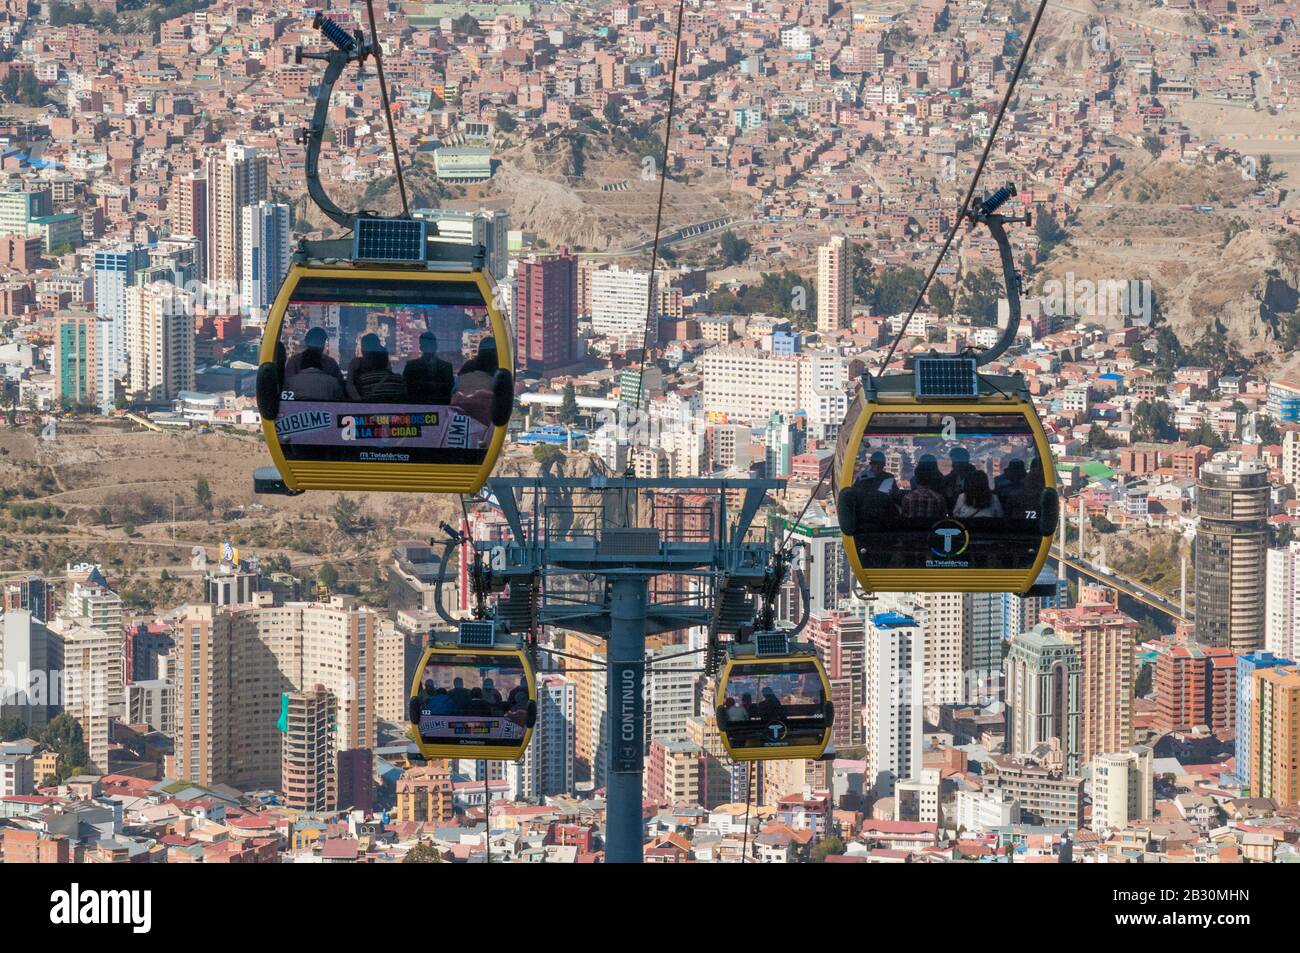 MI Teleferico, das Luftseilbahnsystem, das seit 2014 in der Andenstadt La Paz, der bolivianischen Hauptstadt, betrieben wird Stockfoto